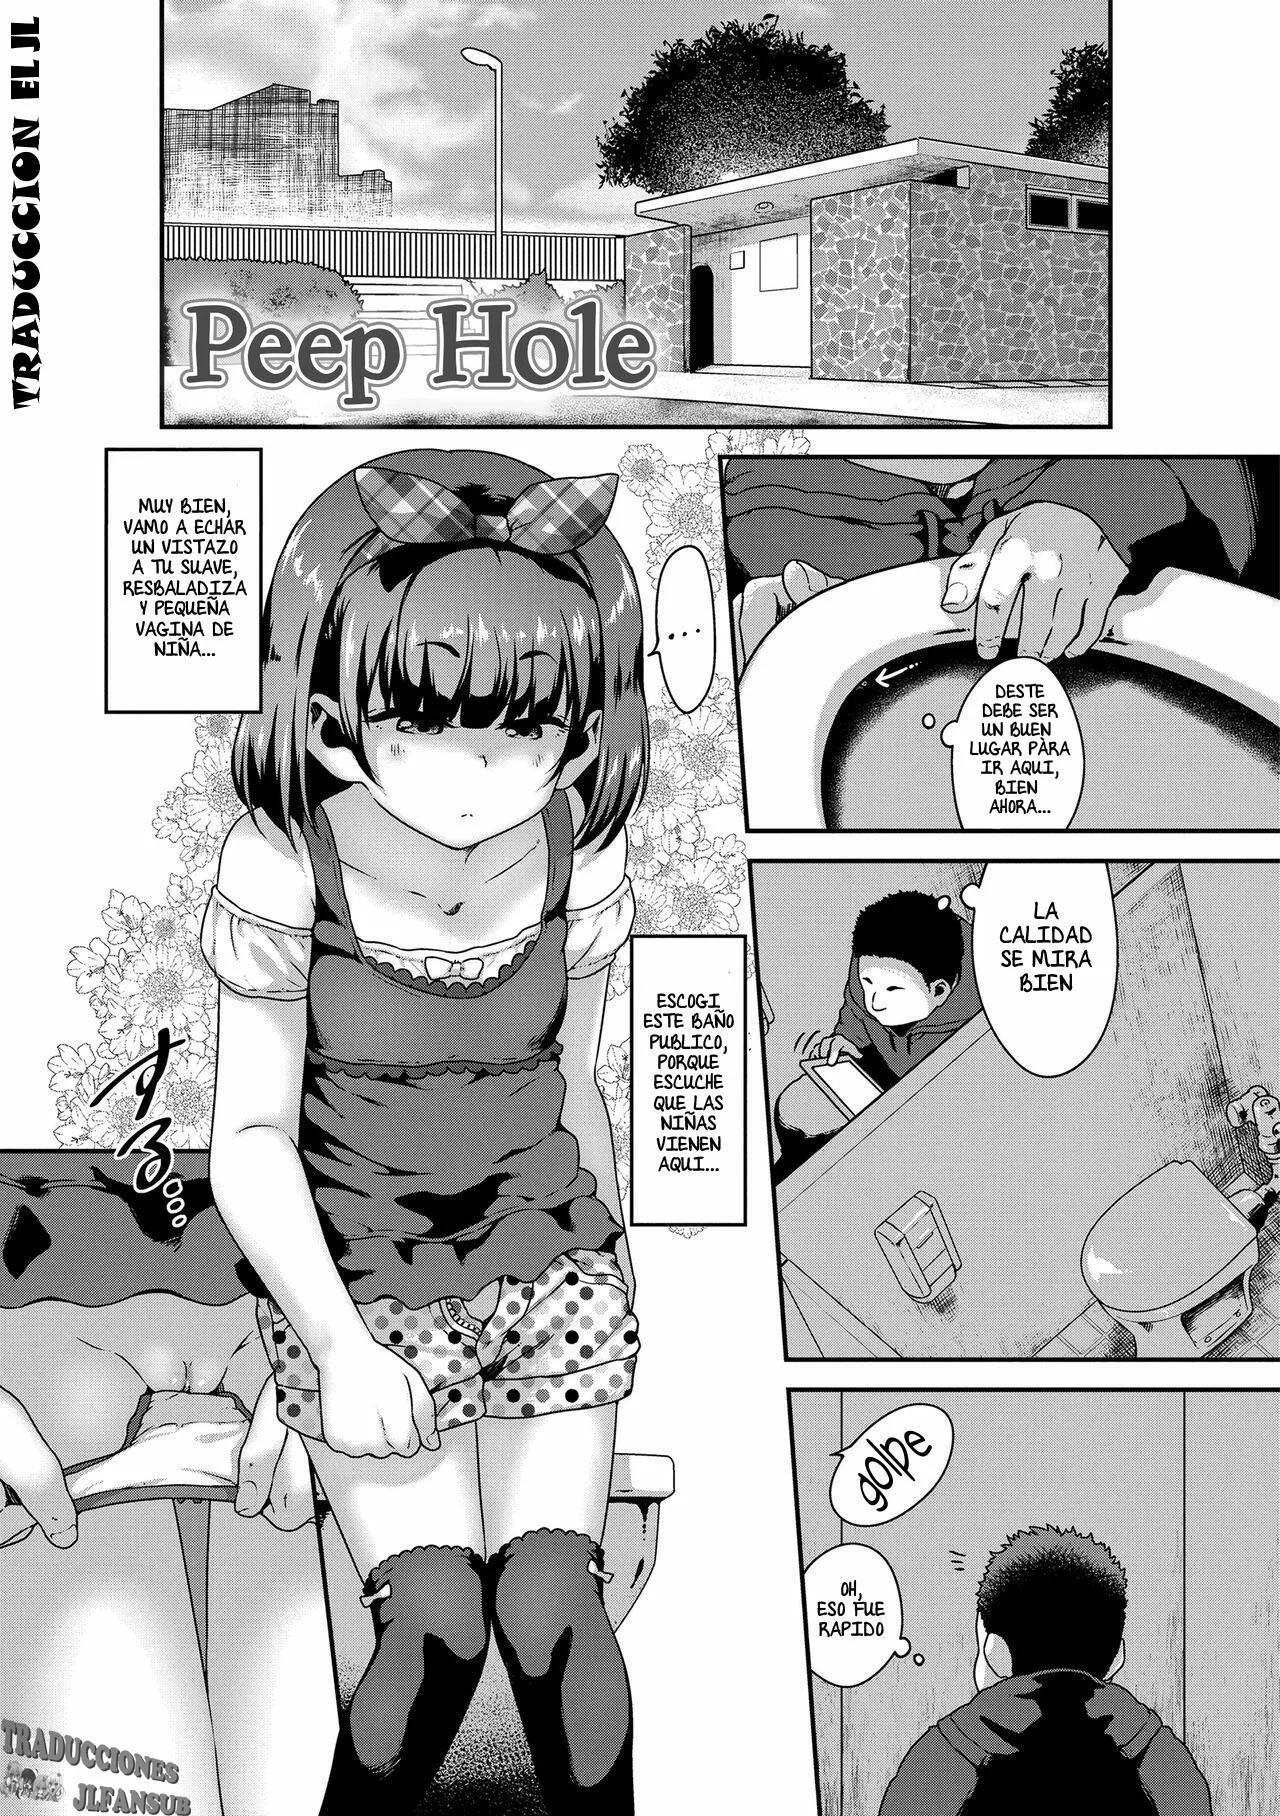 Peep Hole - 1